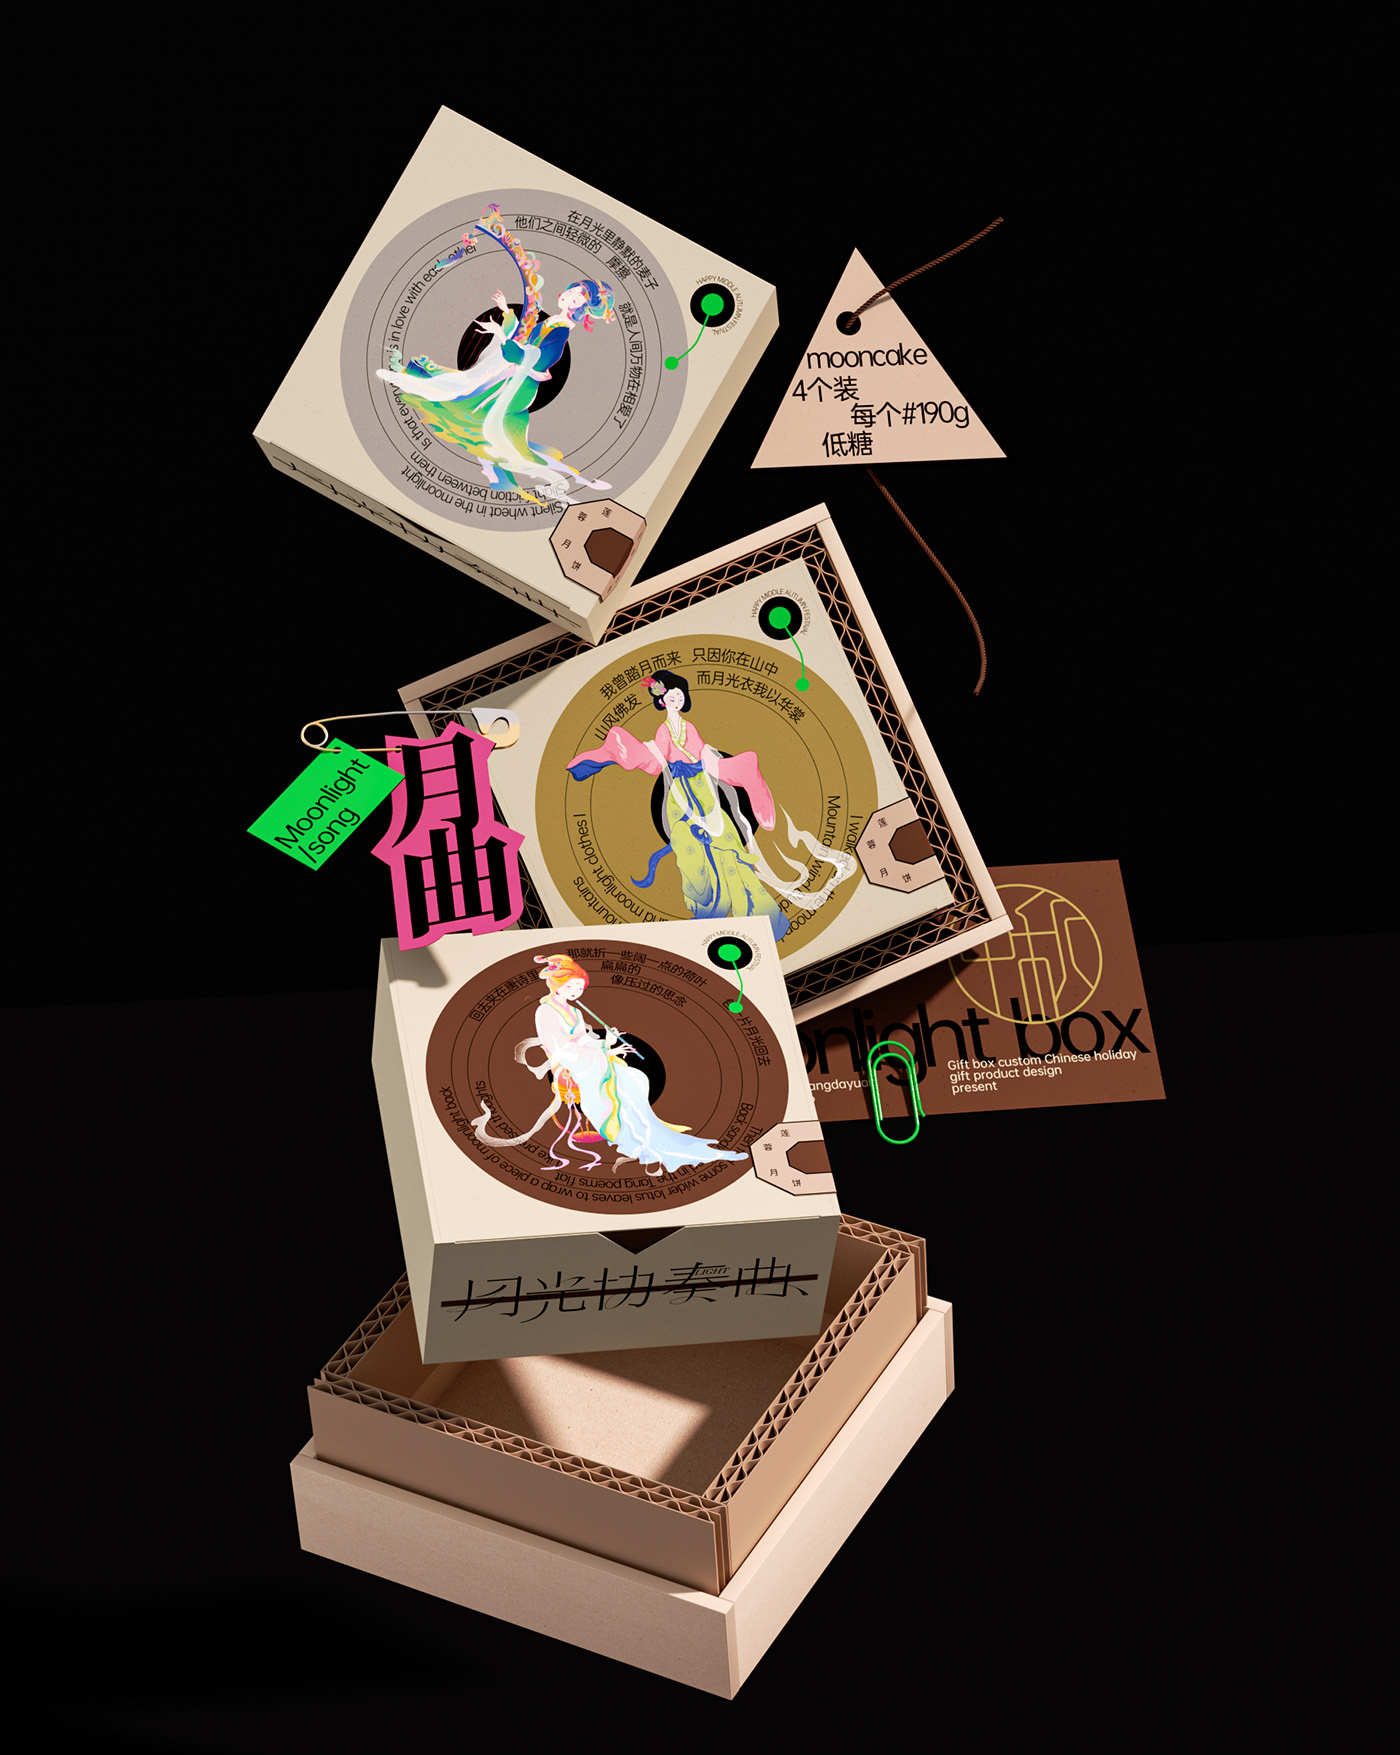 融合艺术与文化的中秋礼盒包装设计